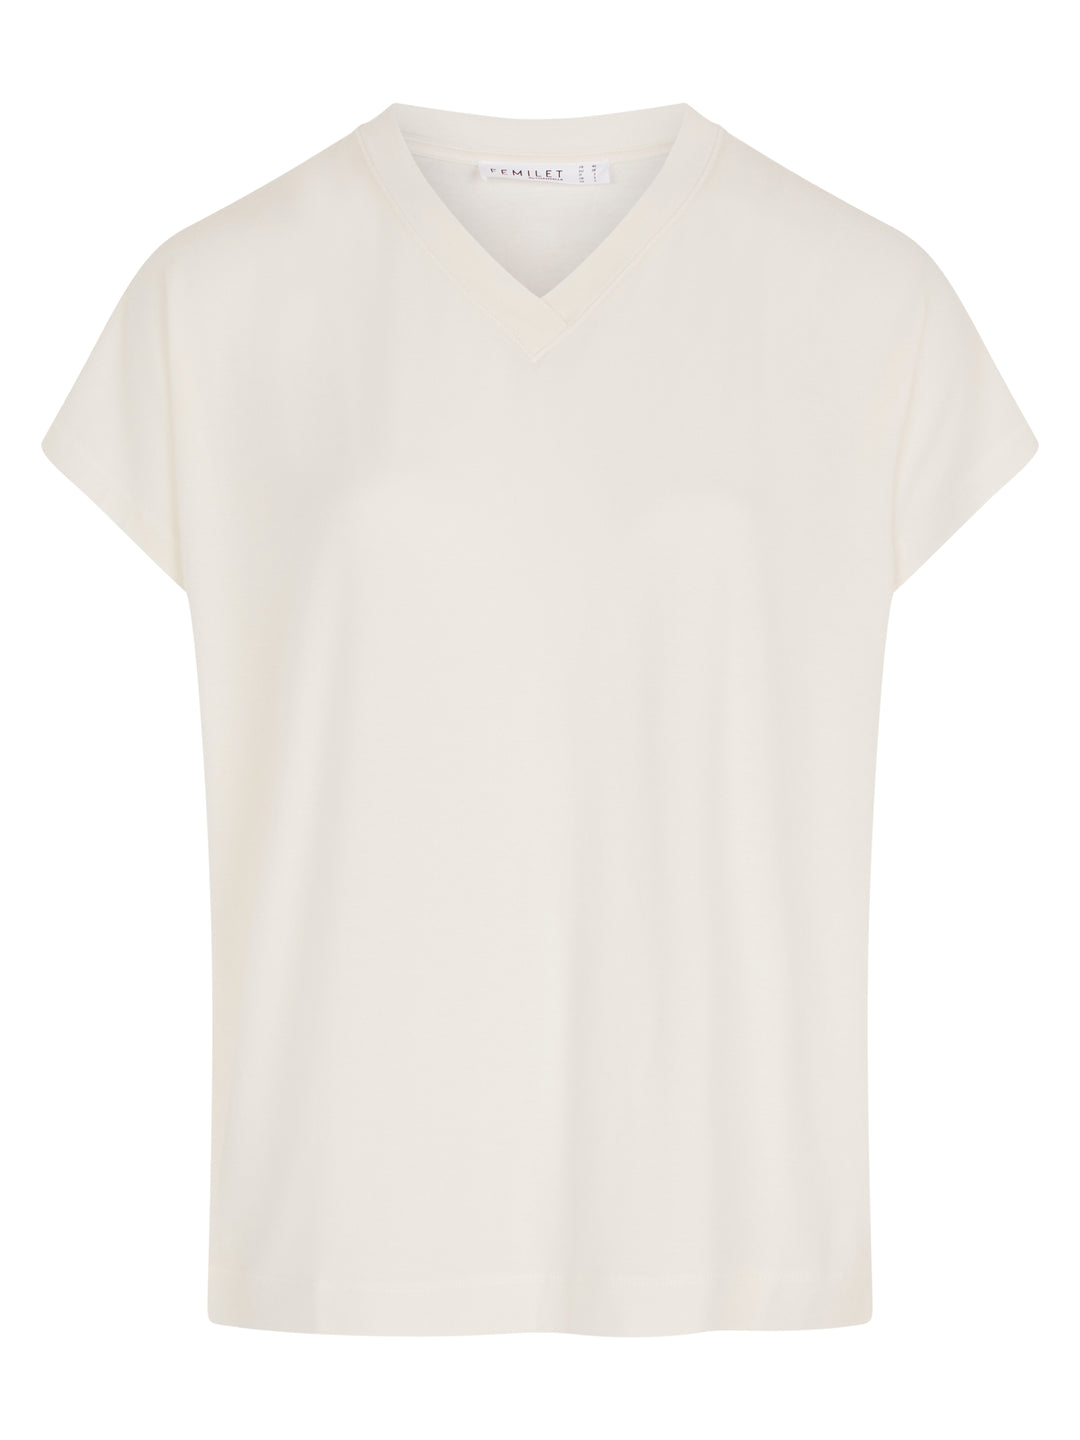 Femilet - T-shirt Kate maniche corte Avorio